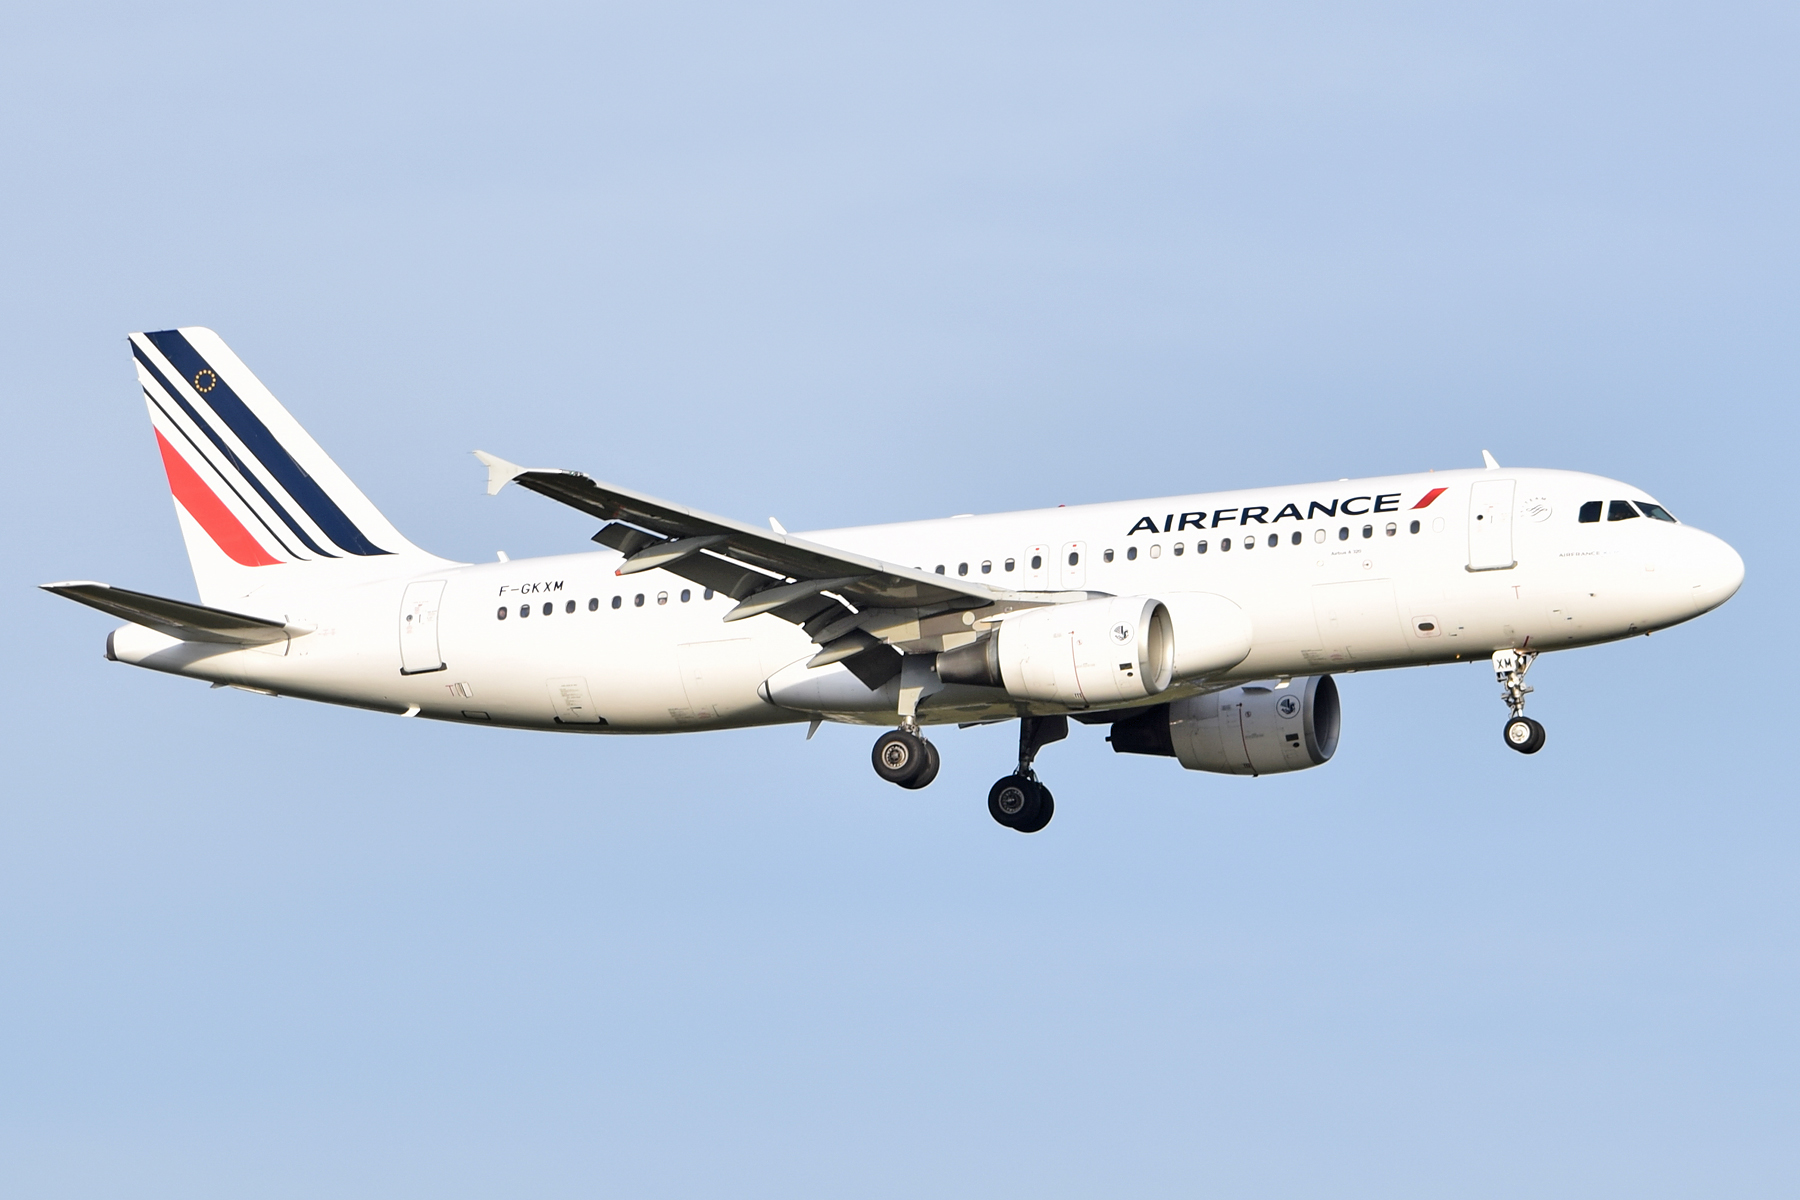 F-GKXM Air France A320